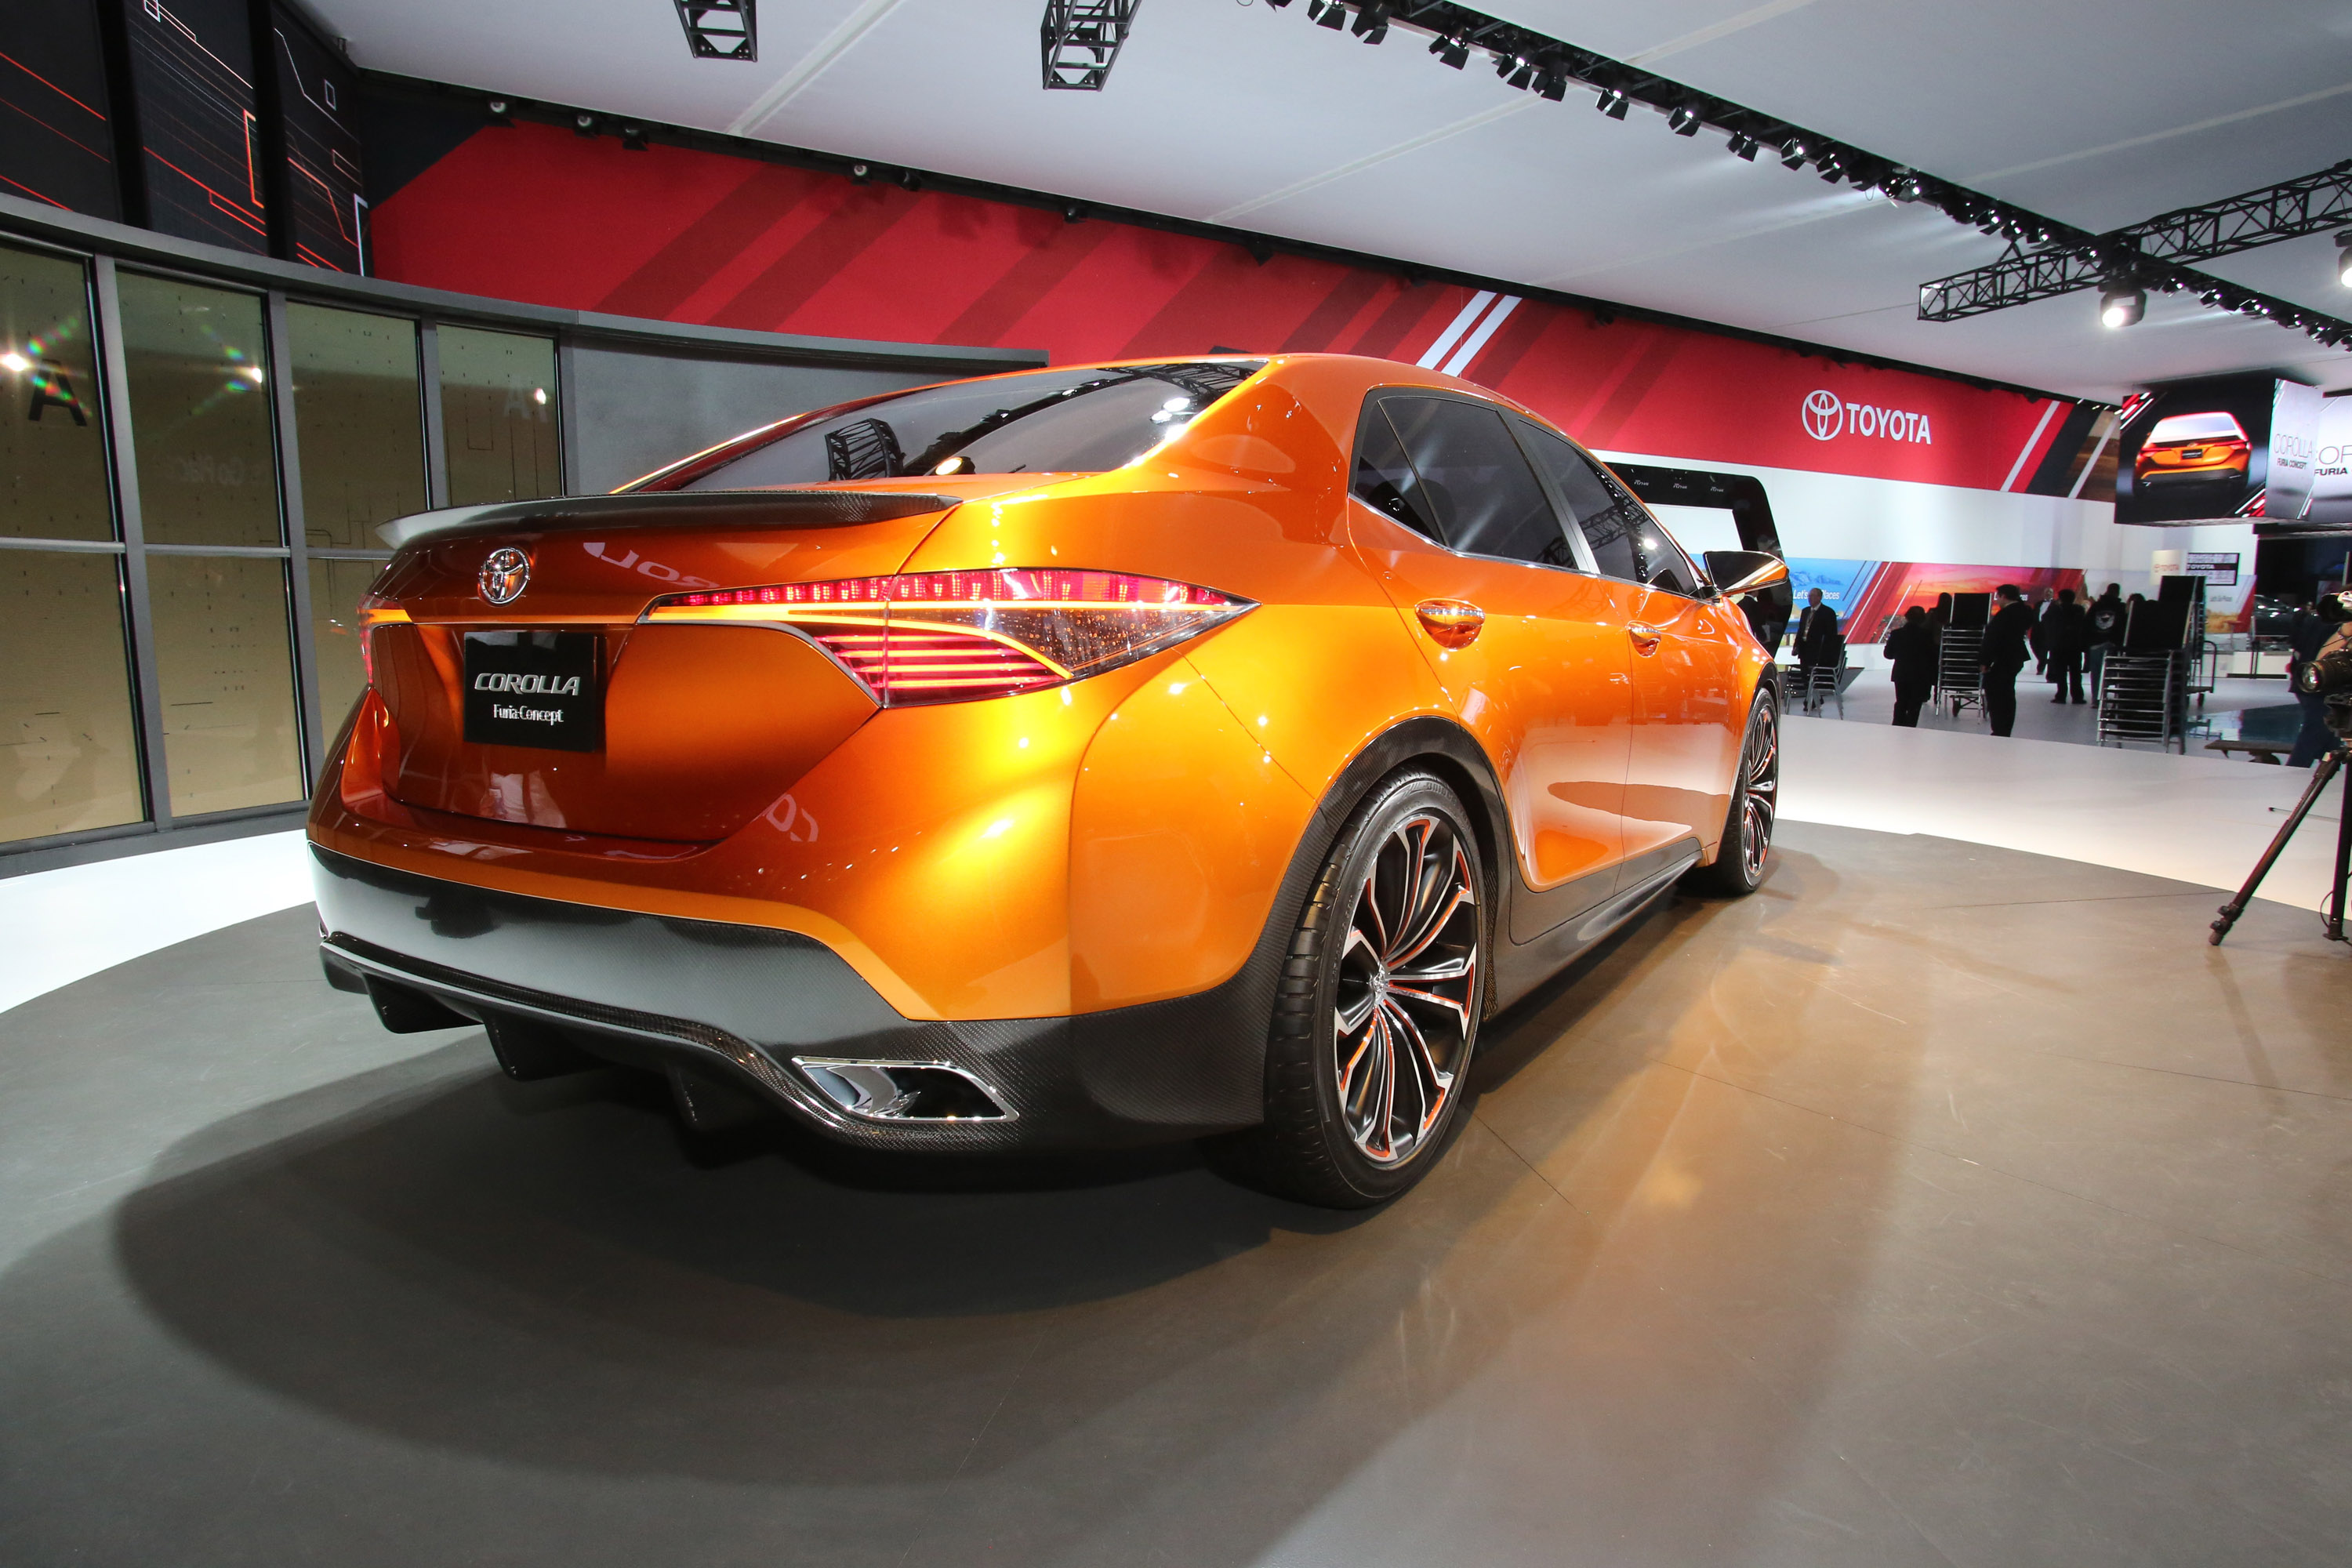 Toyota Corolla Furia Concept Detroit